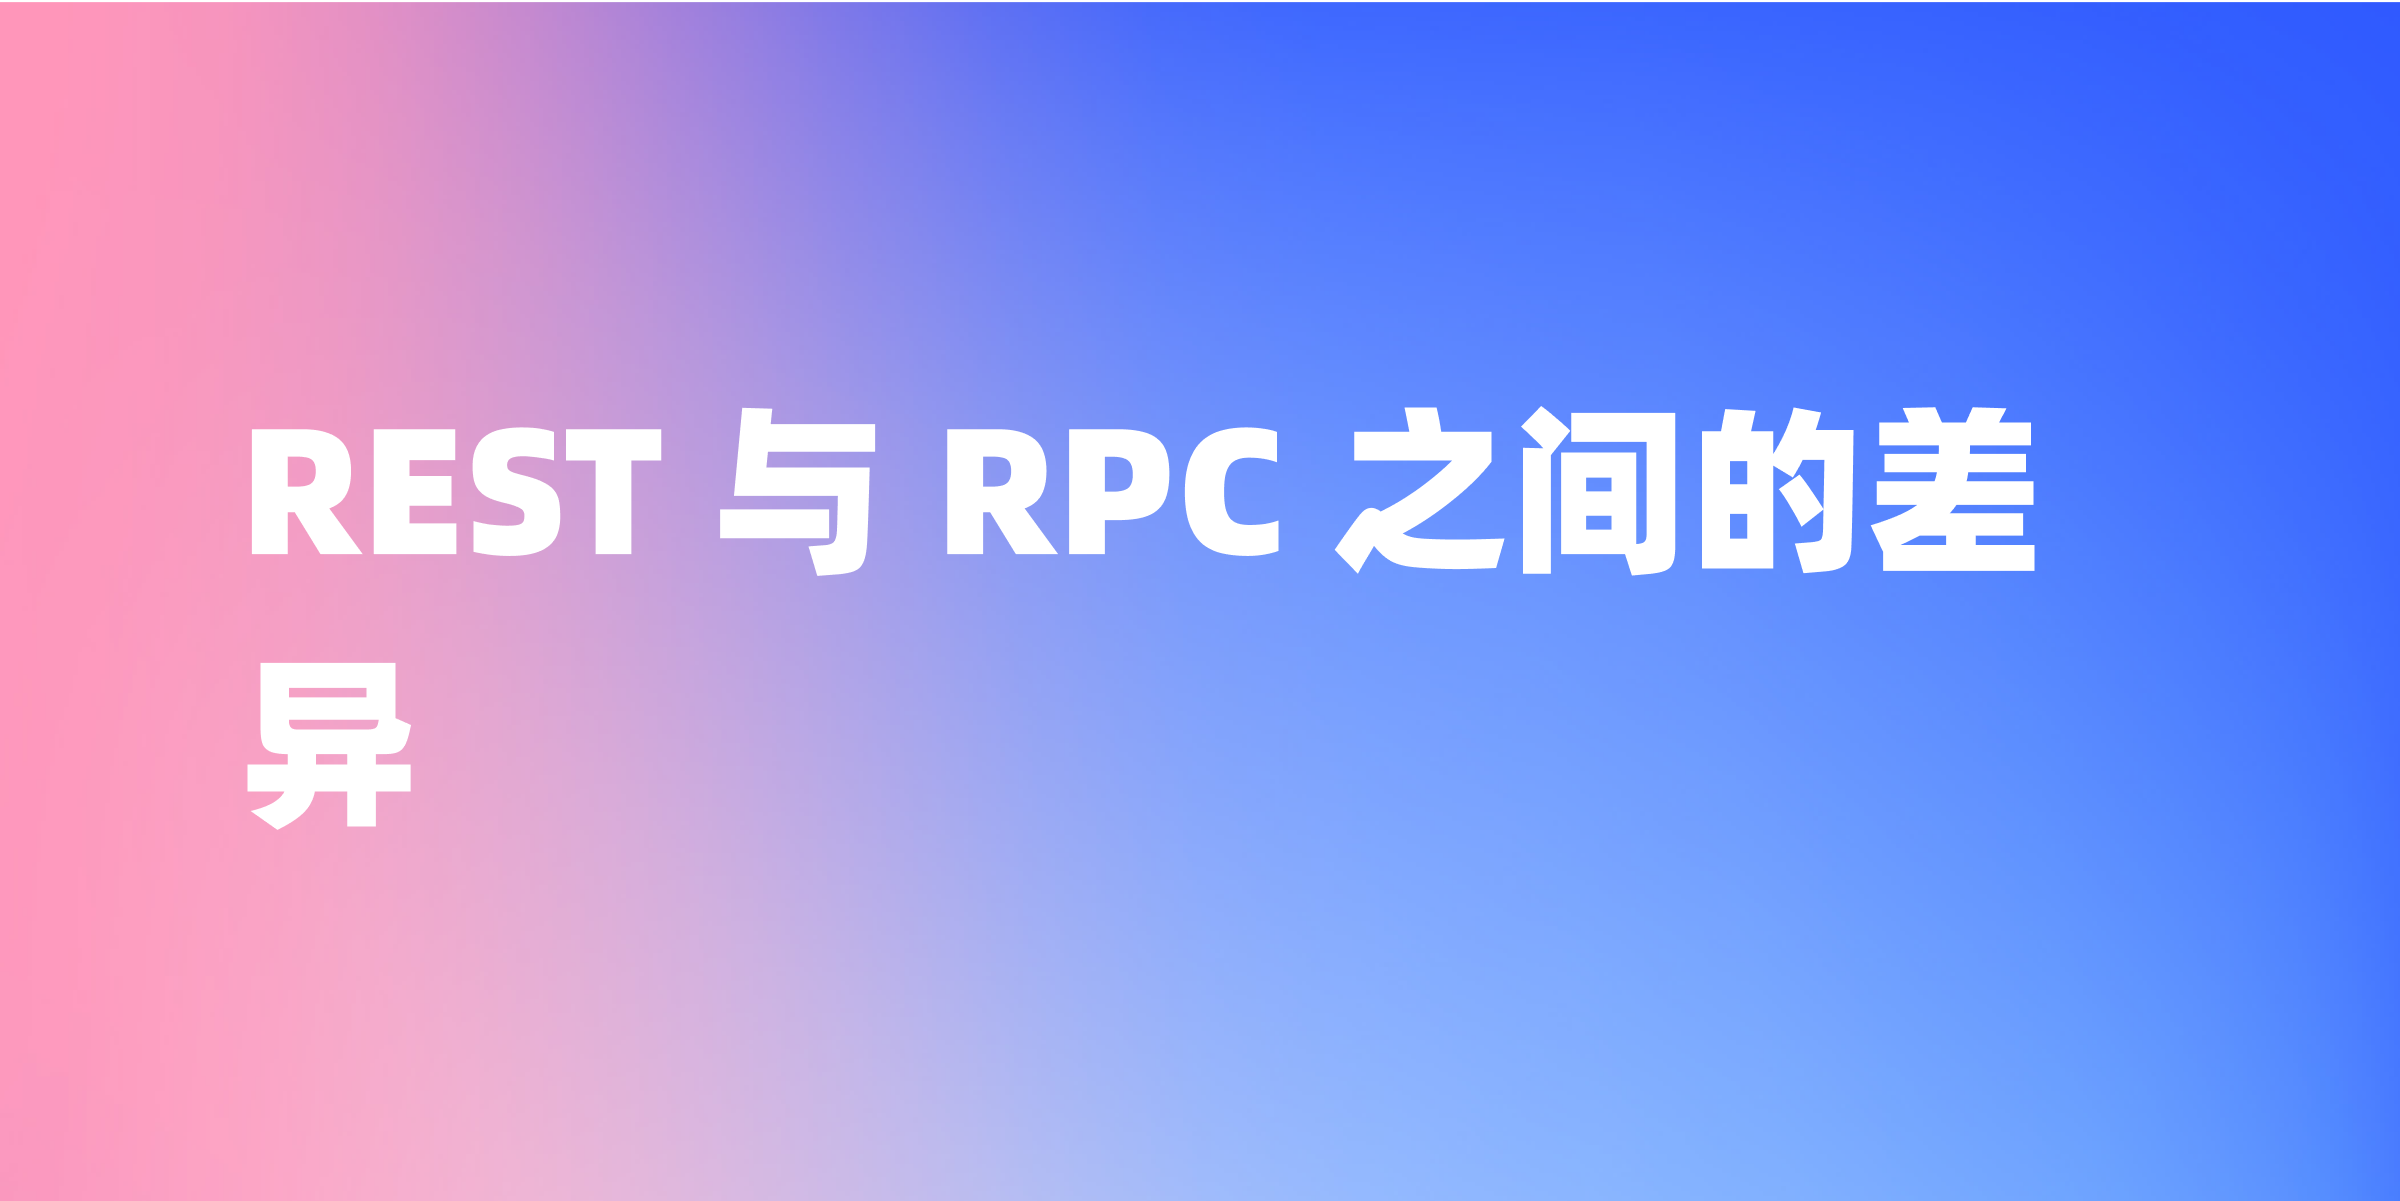 如何理解 REST 和 RPC 之间的差异？